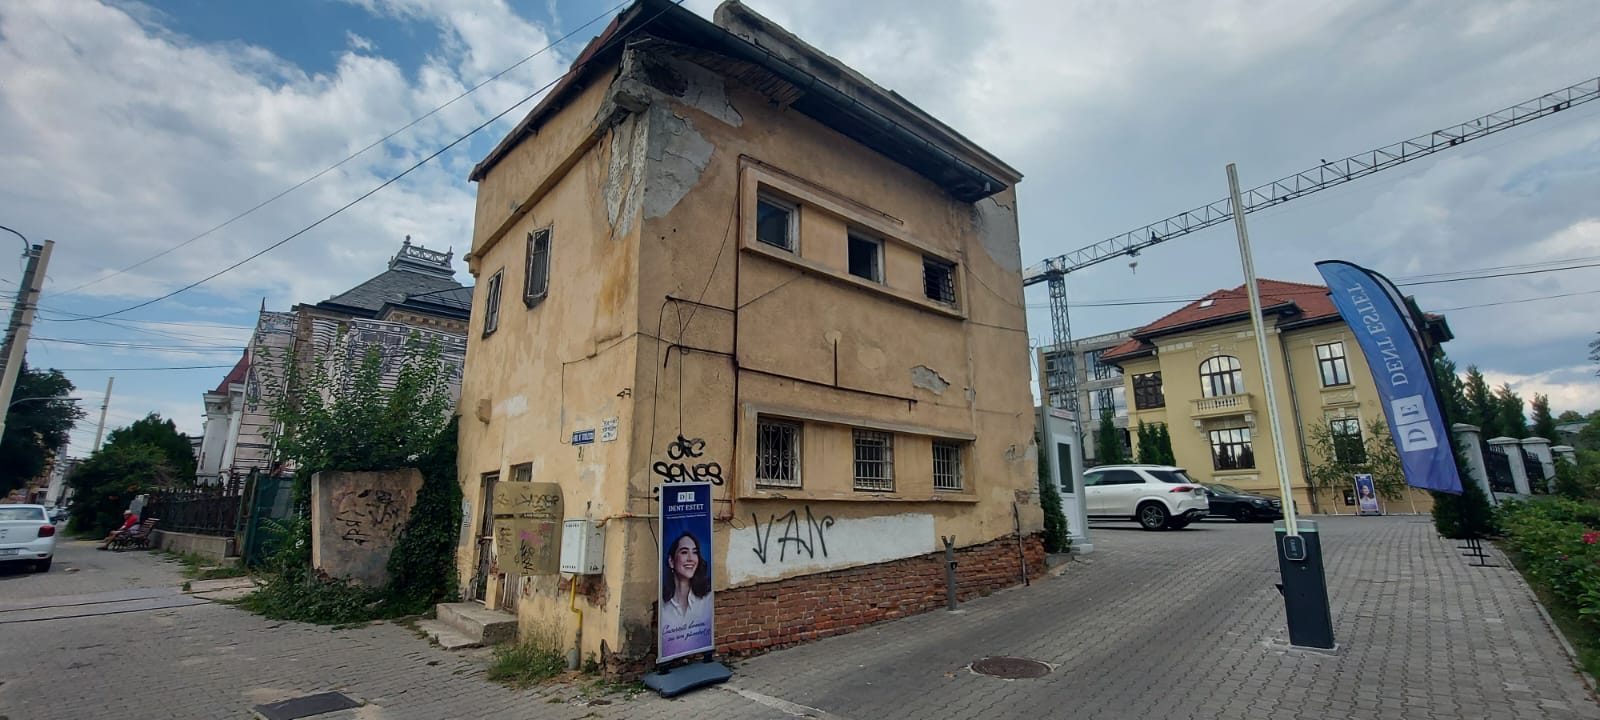 Imobil din centrul Craiovei, scos la licitaţie de primărie